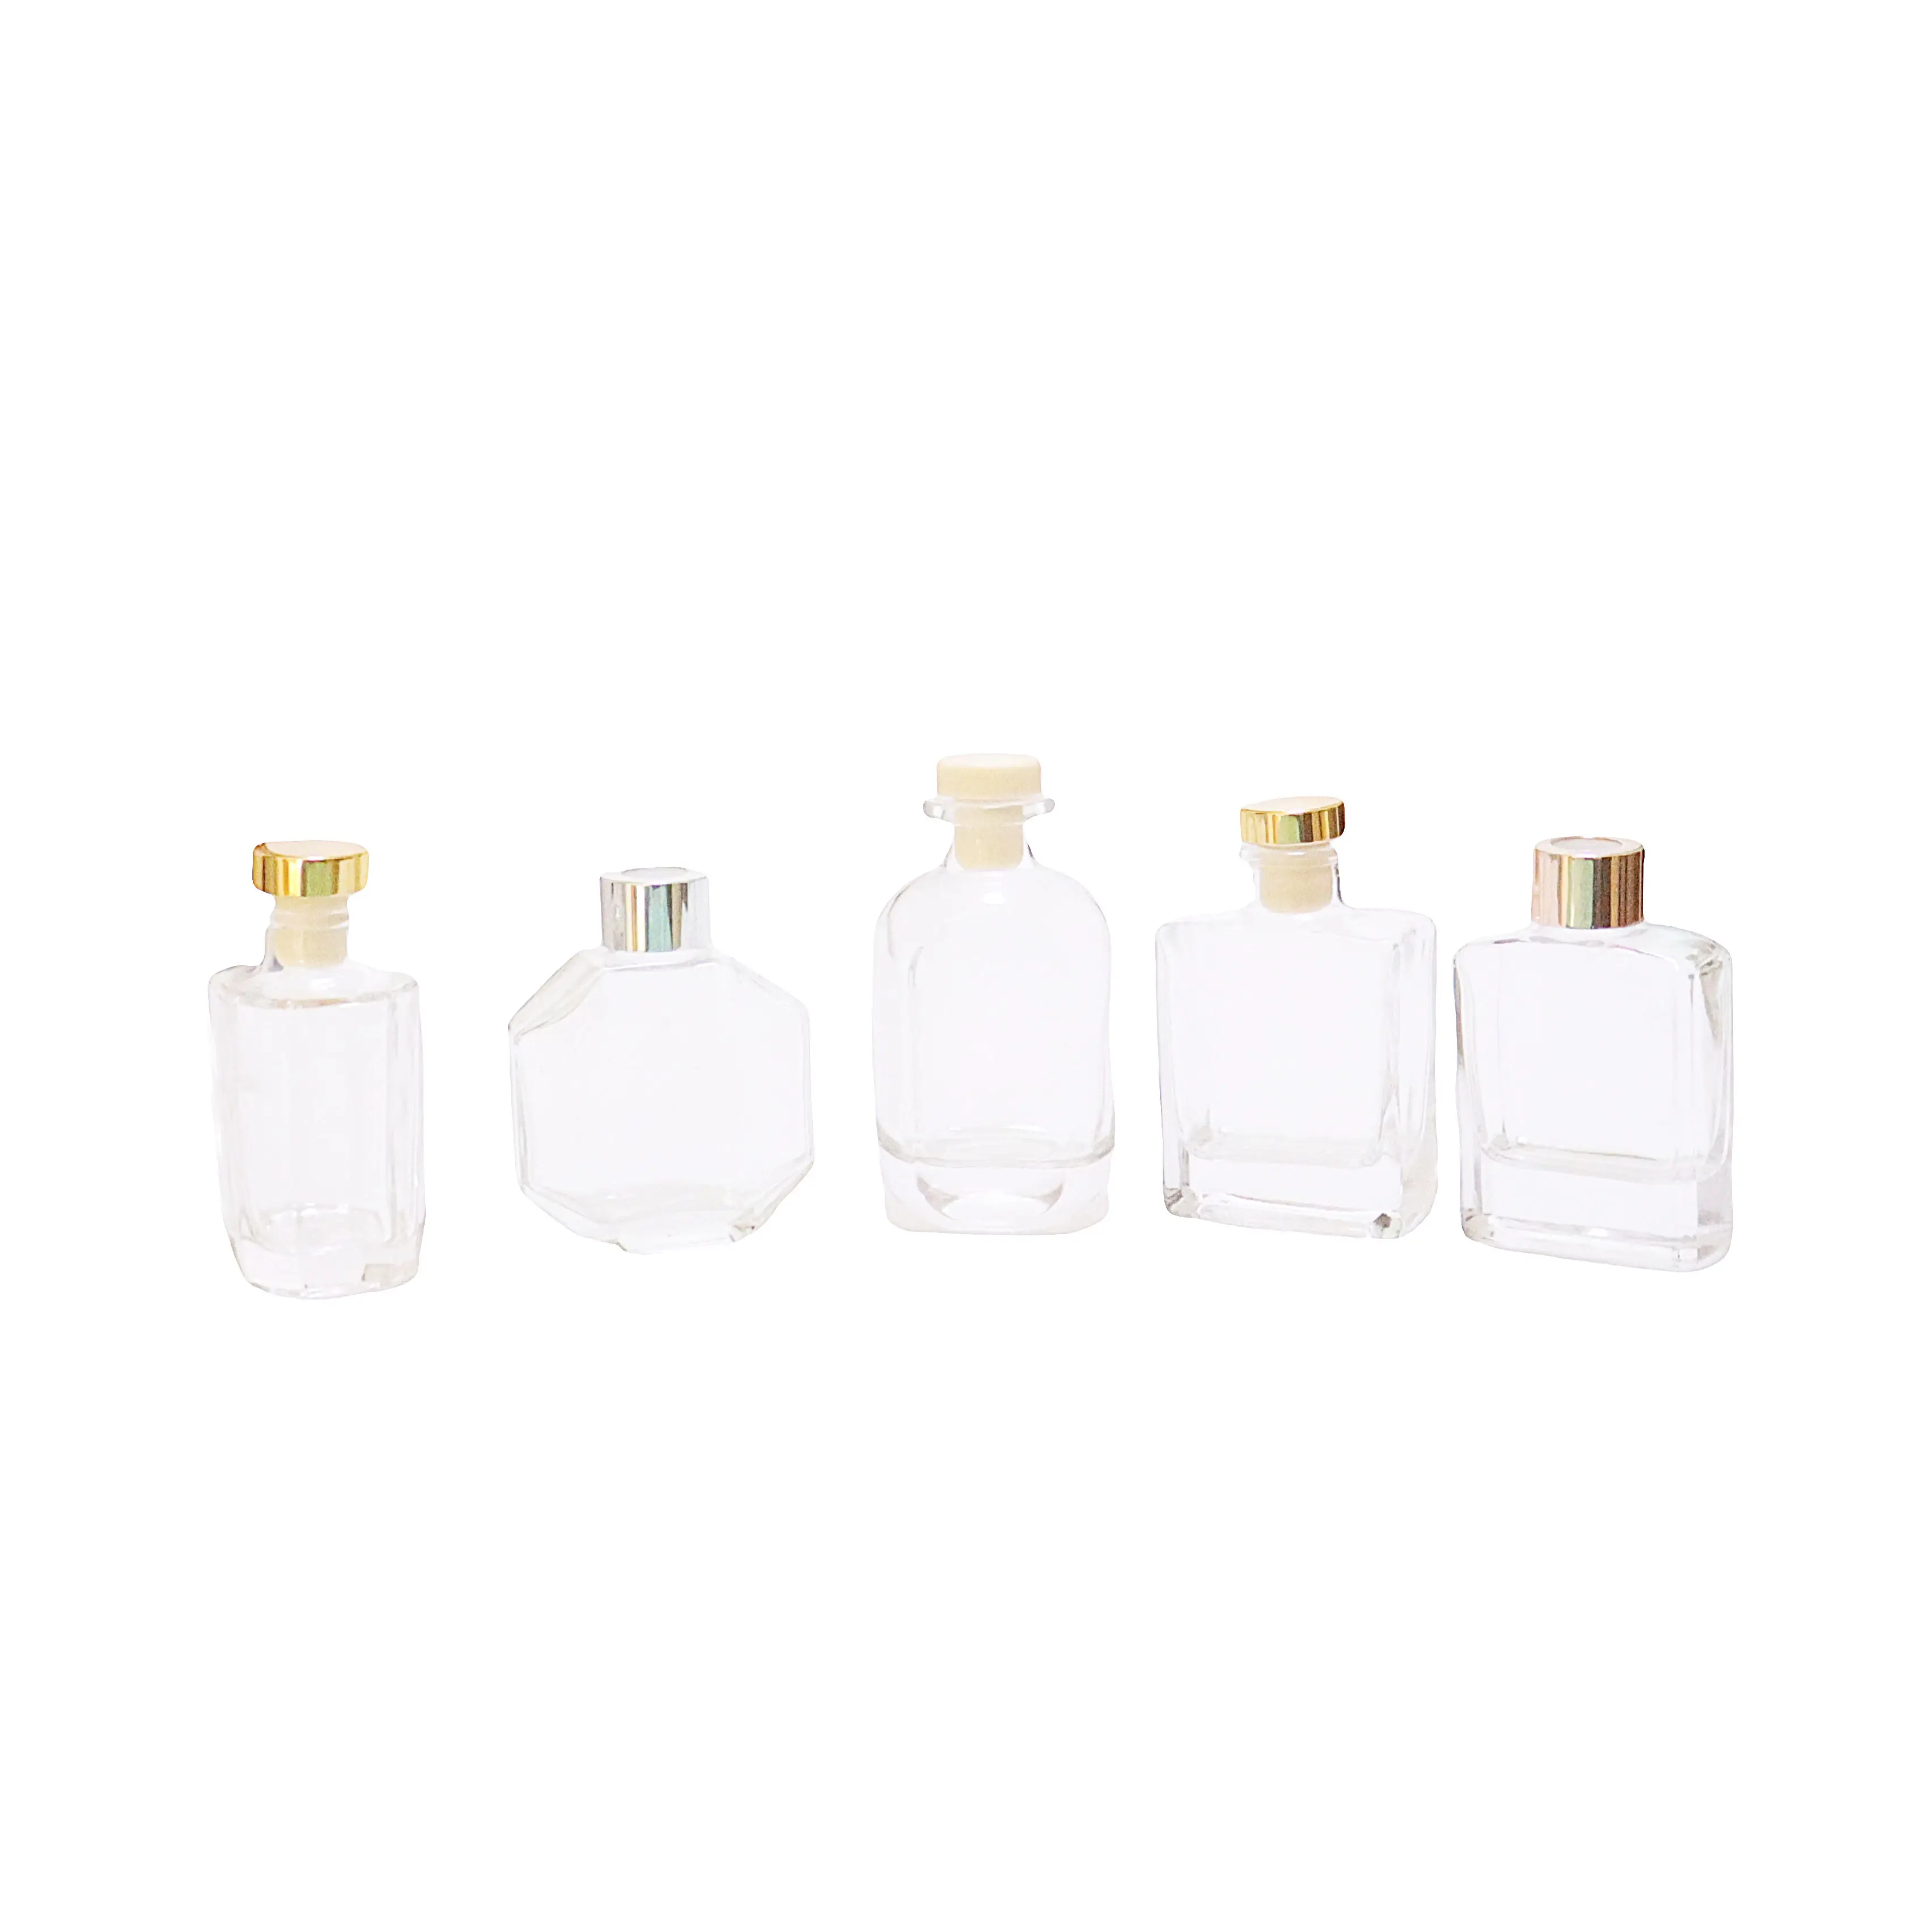 50Ml Home Decor Luchtverfrisser Parfum Fles Luxe Custom Glas Aromatherapie Essentiële Oliën Riet Diffuser Flessen Groothandel